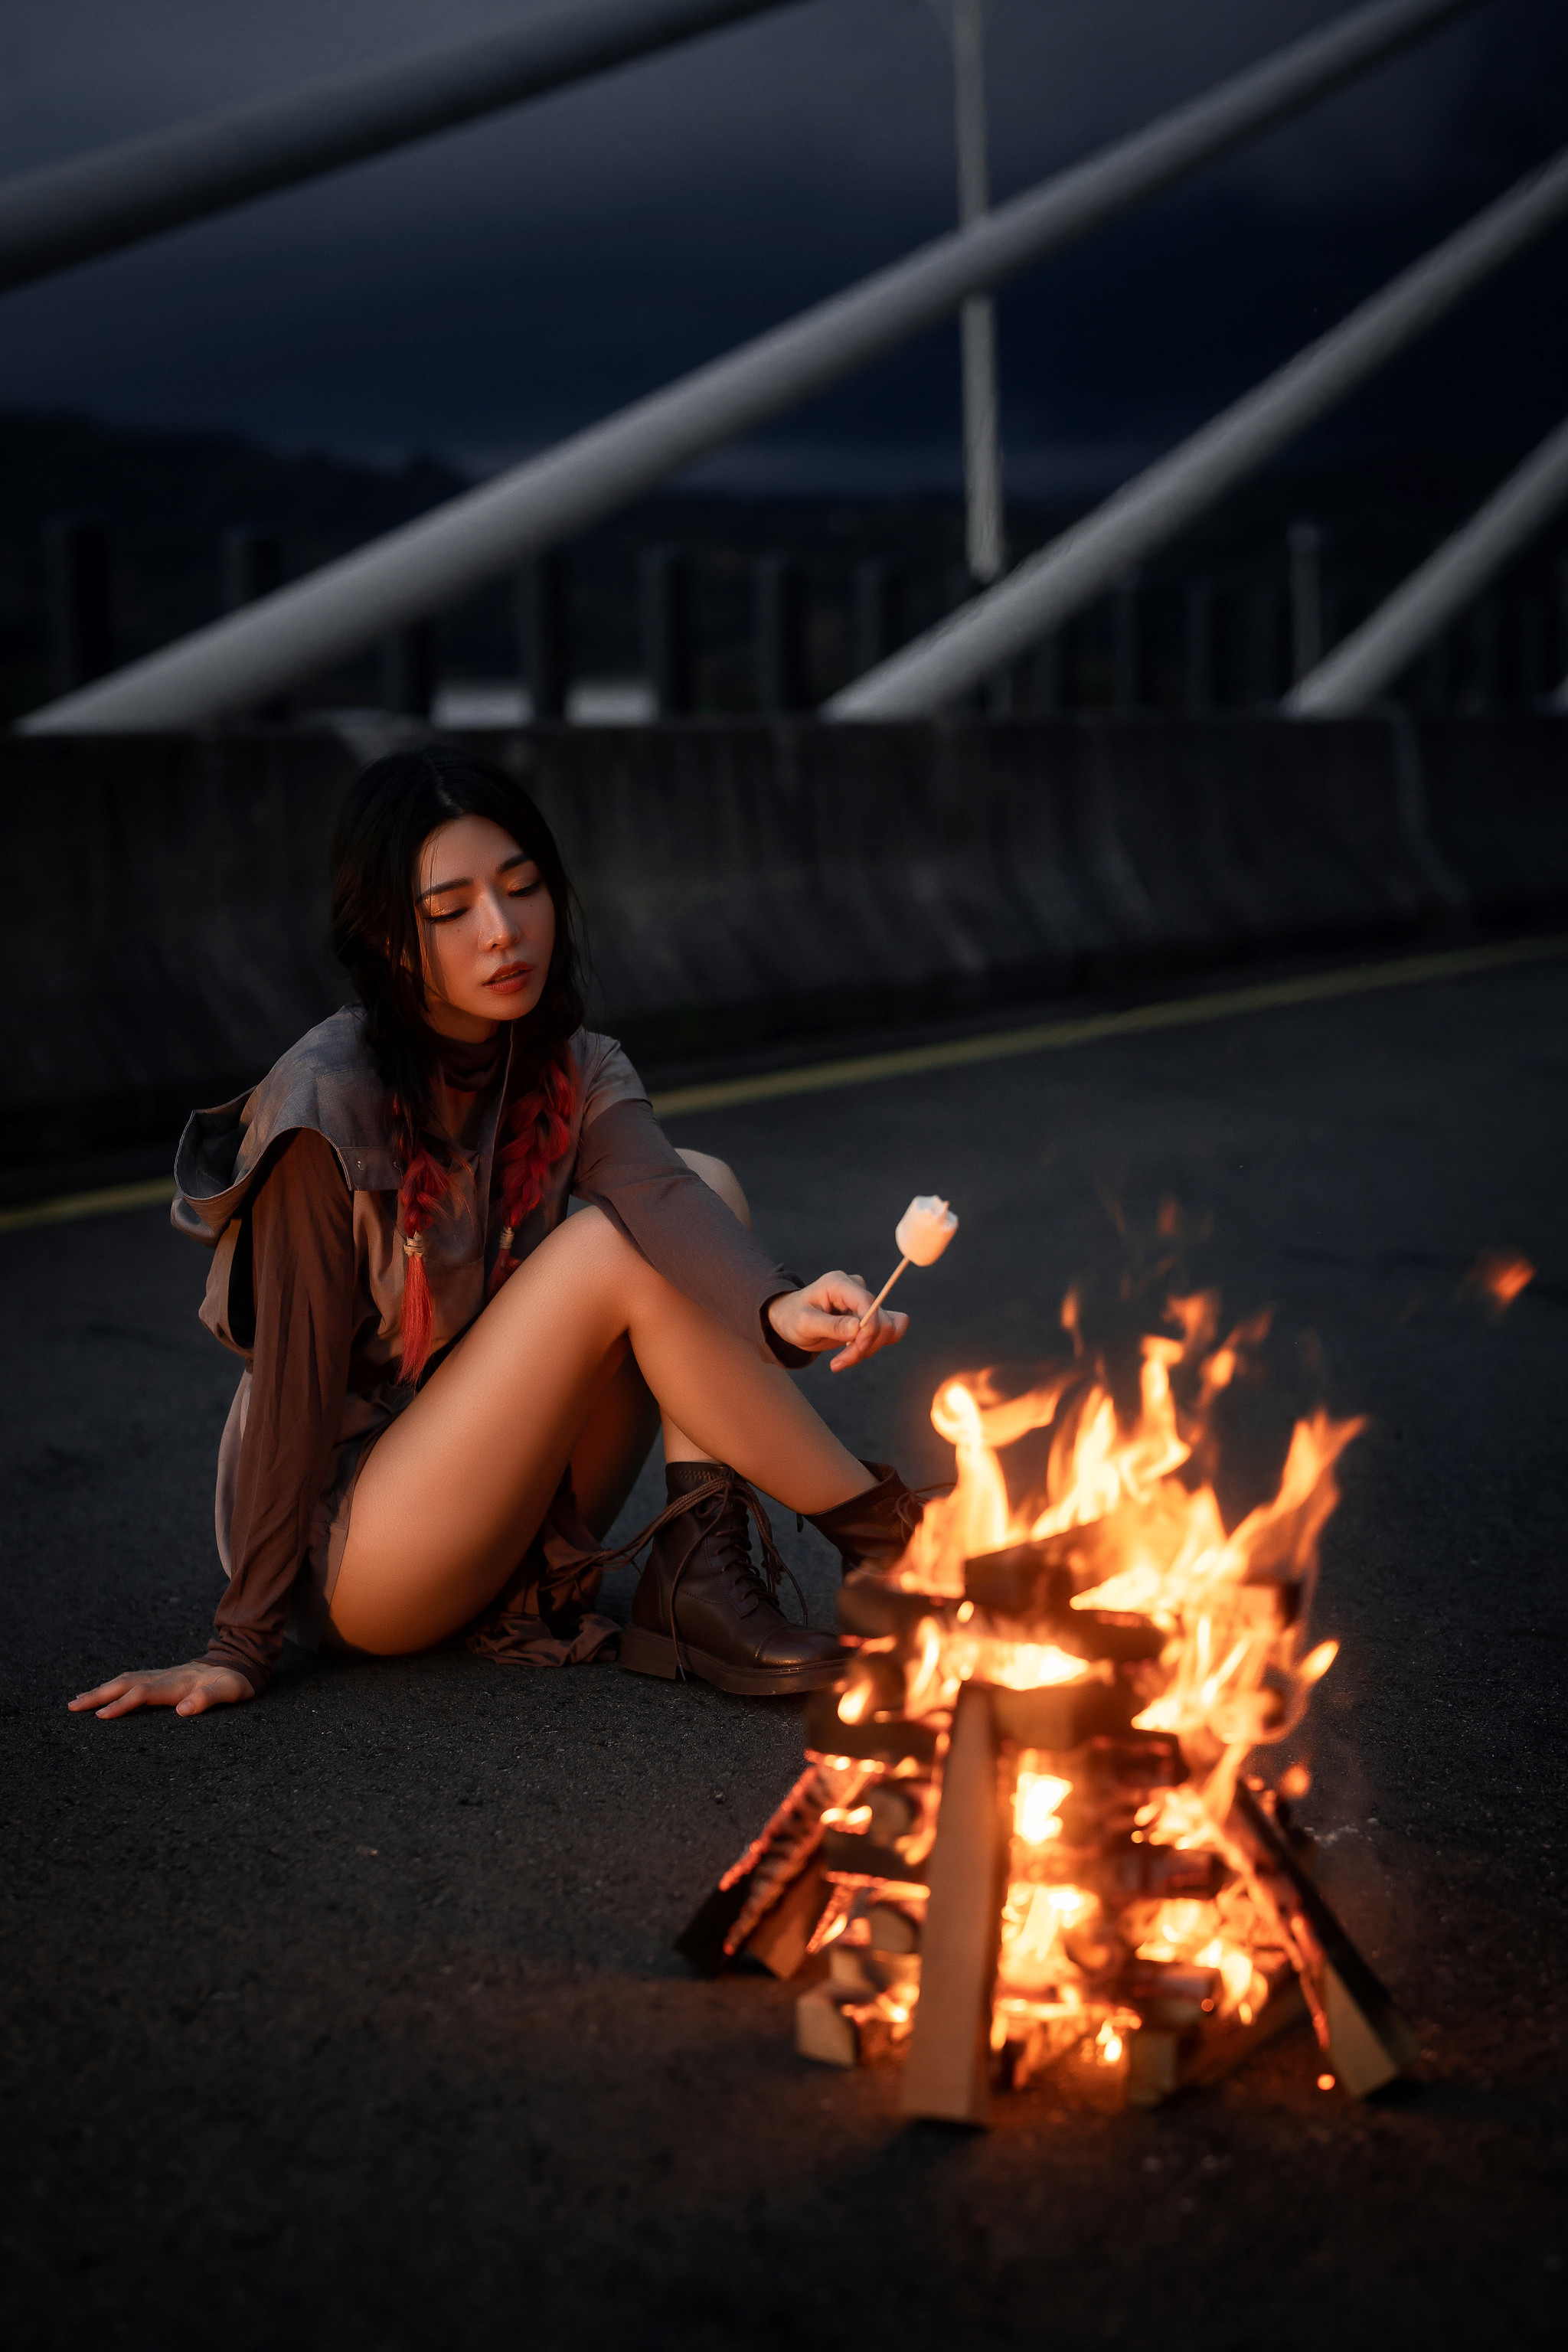 Sexy Funk Pig Women Asian Dark Hair Legs Outdoors Campfire 2048x3072